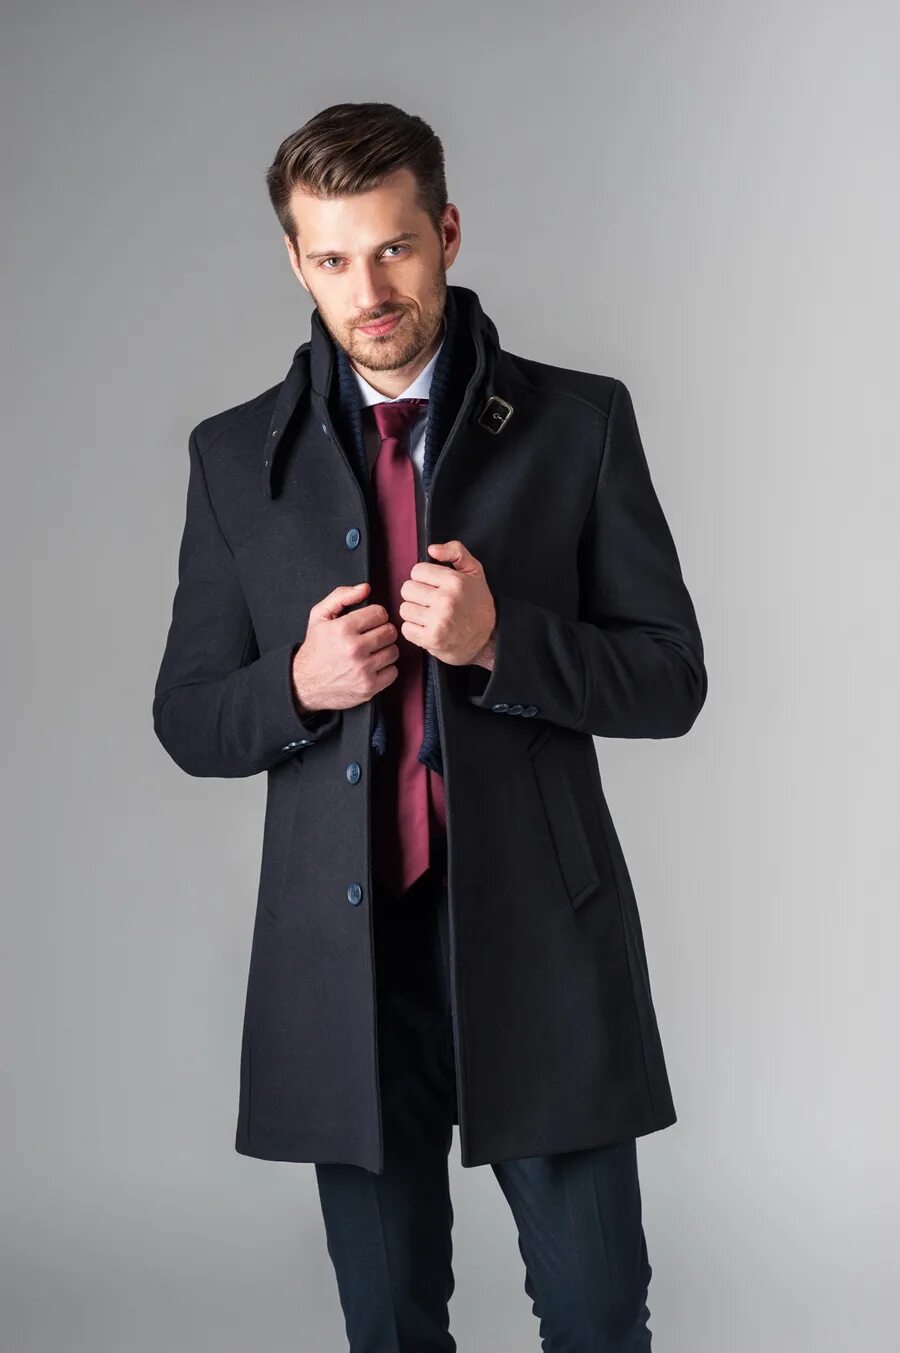 Легкое мужское пальто. Veste Lana пальто мужское. Joop! 66025 Пальто мужское. Пальто мужское приталенное. Модное мужское пальто.